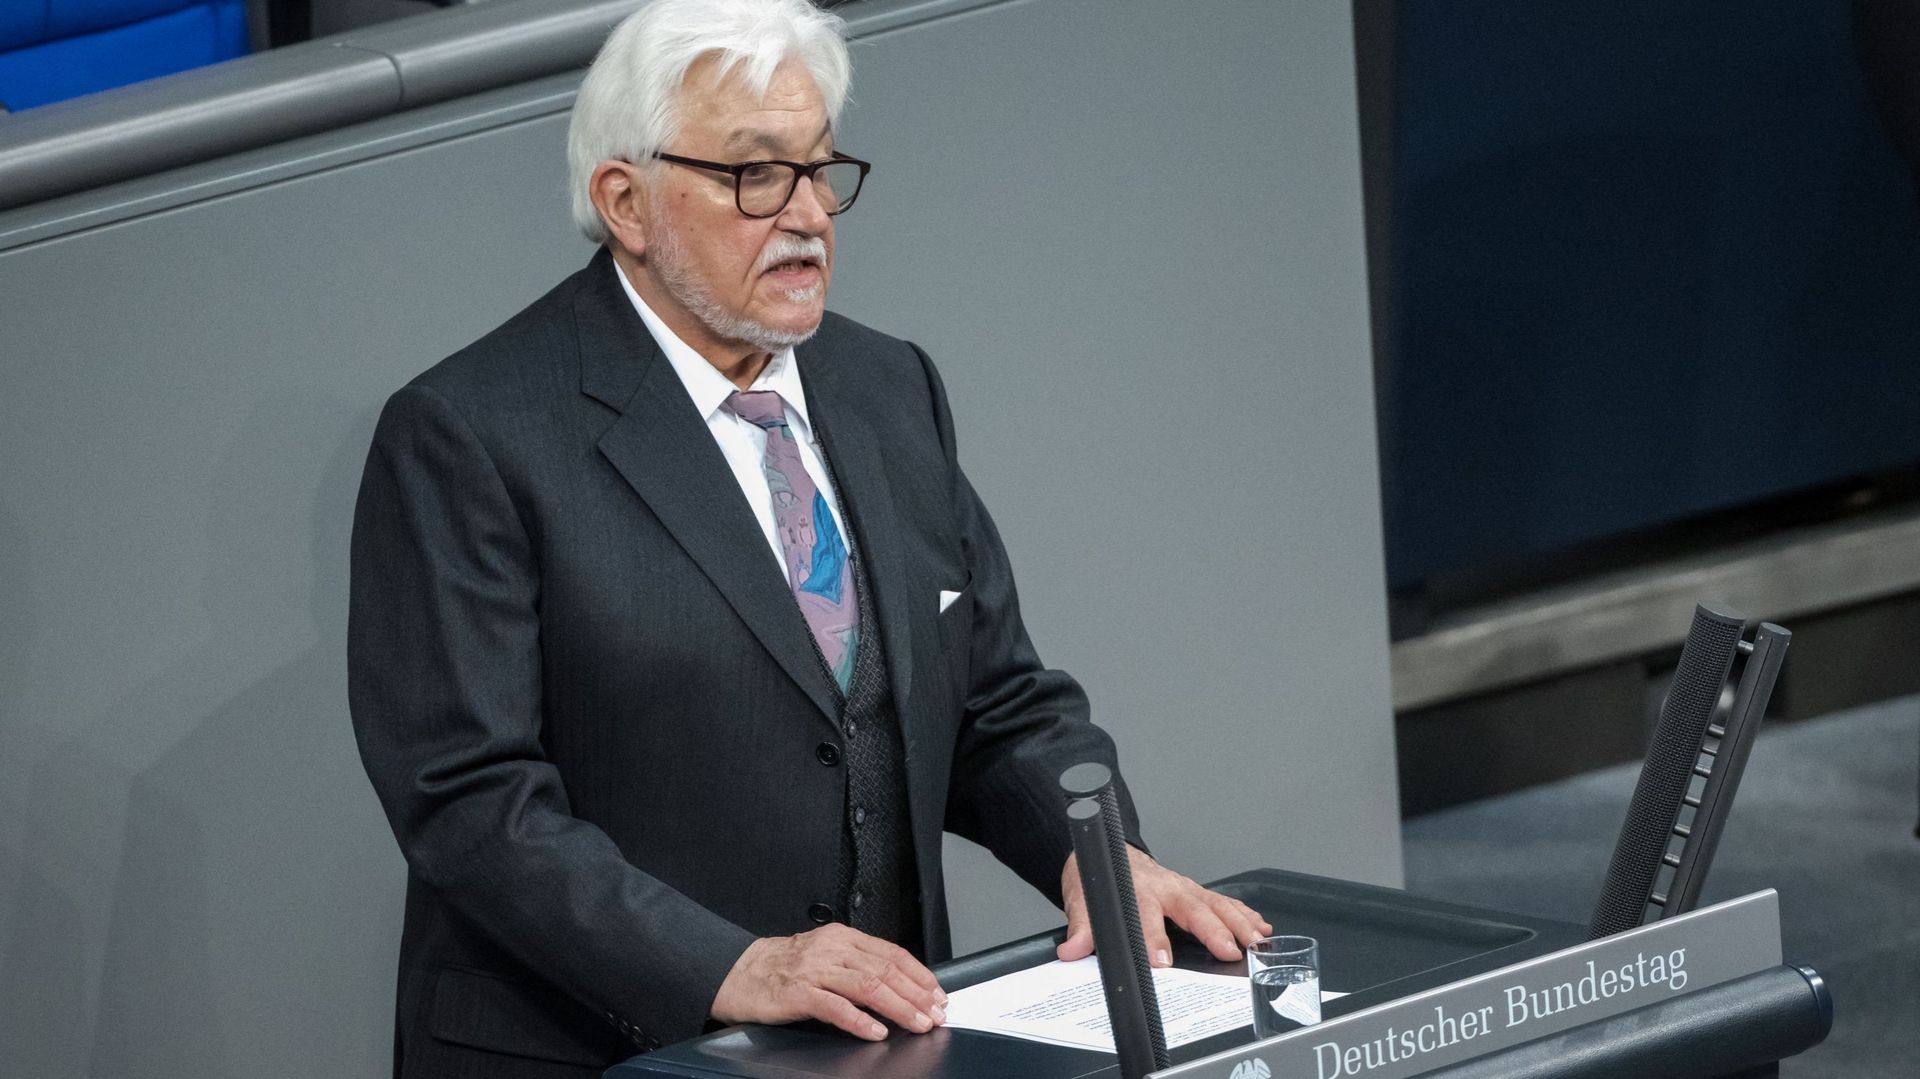 Klaus Schirdewahn, représentant de la communauté queer, prend la parole lors de la cérémonie annuelle à la mémoire des victimes et des survivants de l’Holocauste dans la salle plénière du Bundestag, la chambre basse du parlement allemand, à Berlin, le 27 